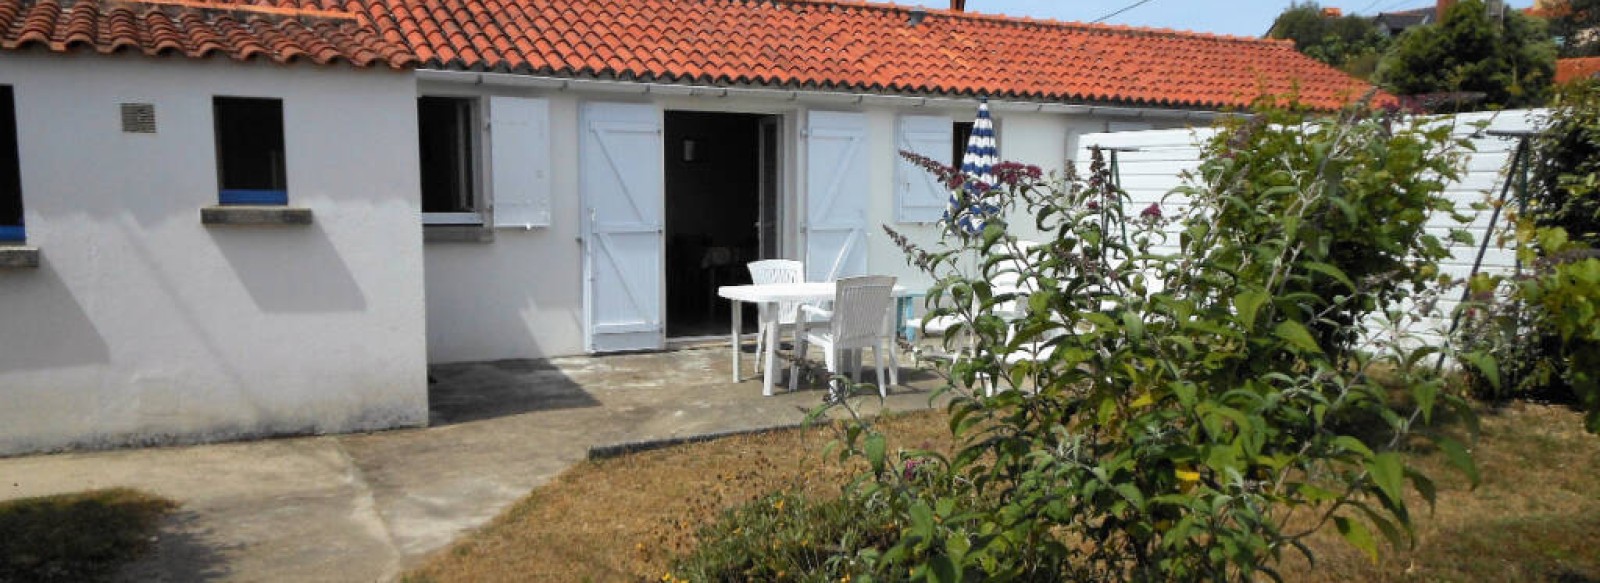 Ile de Noirmoutier, L'Epine, maison calme et confortable, proche de la plage de la Bosse